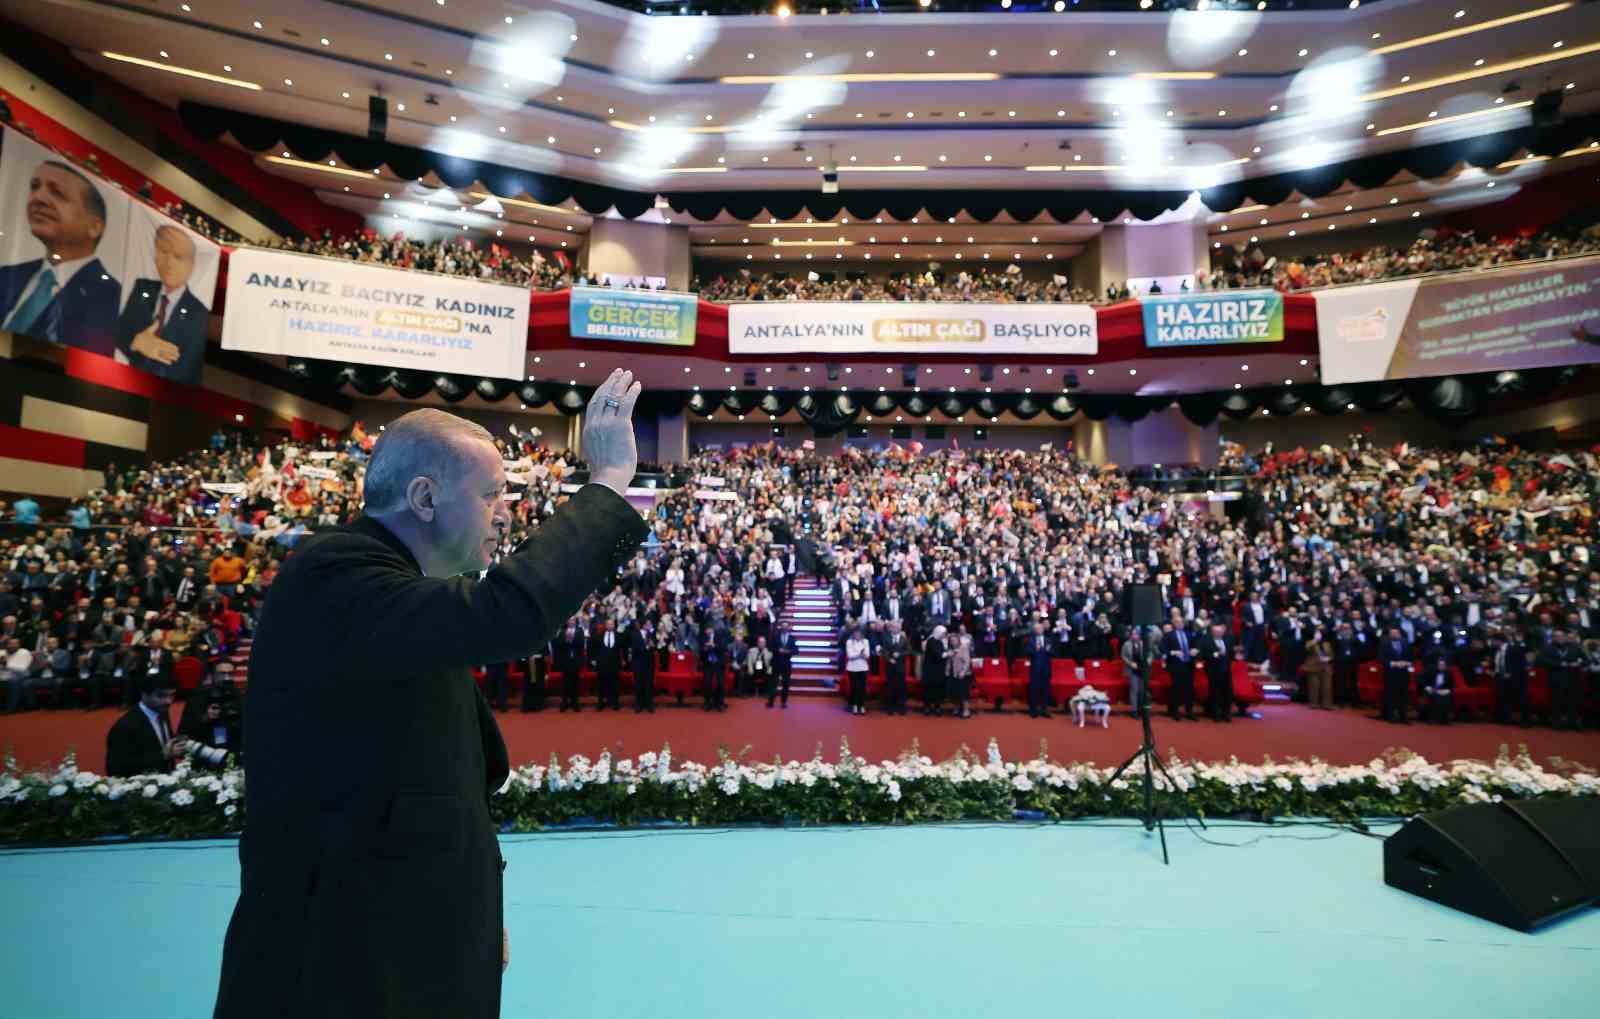 Cumhurbaşkanı Erdoğan: “Demokrasinin önemli bir unsuru olan muhalefetin perişan hali içimizi acıtıyor”